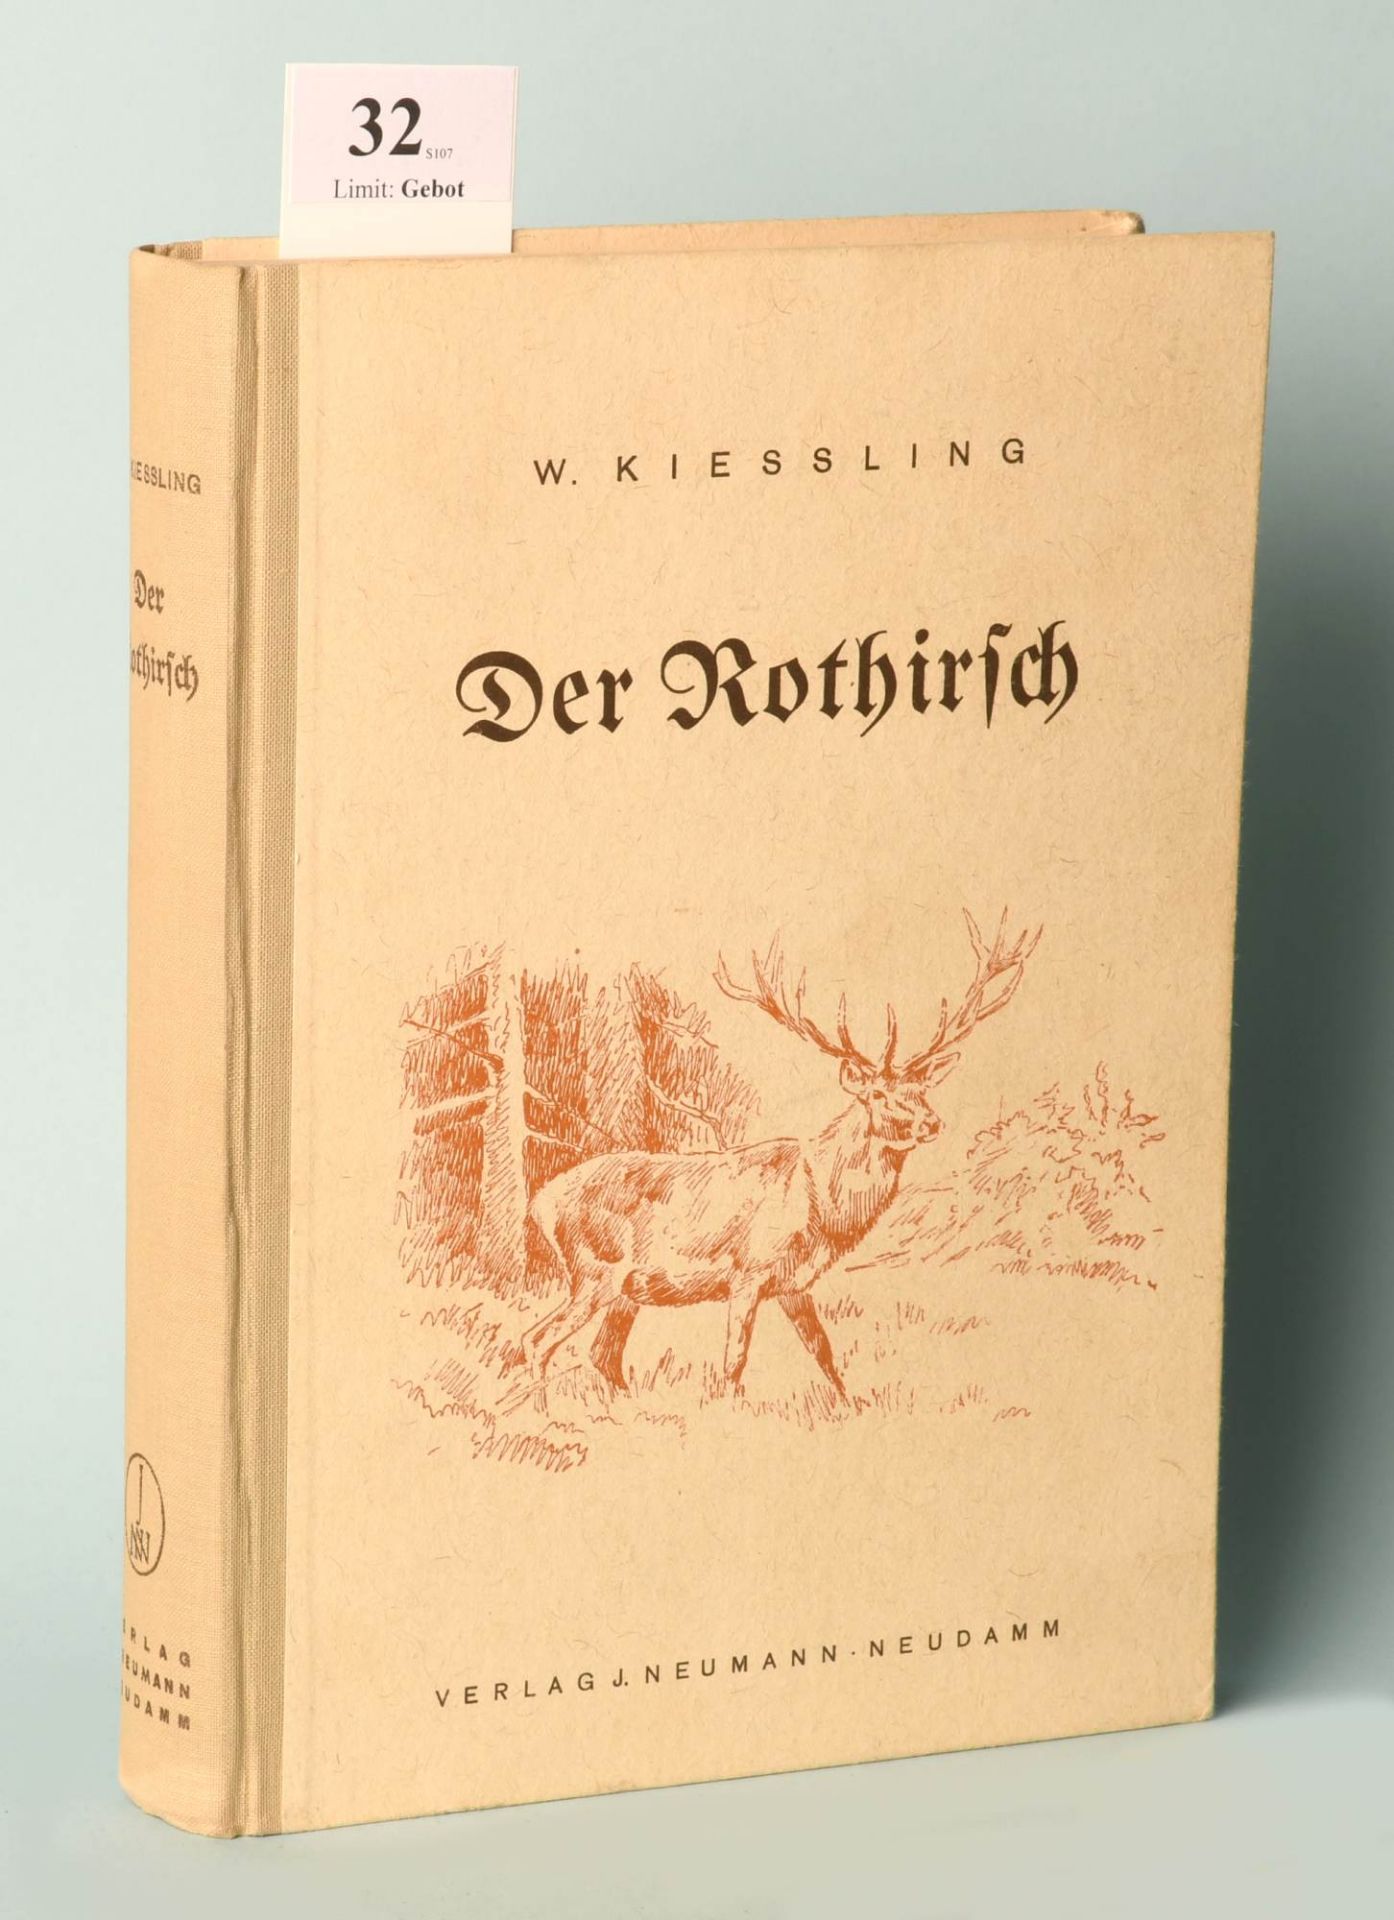 Kießling, W. "Der Rothirsch und seine Jagd"